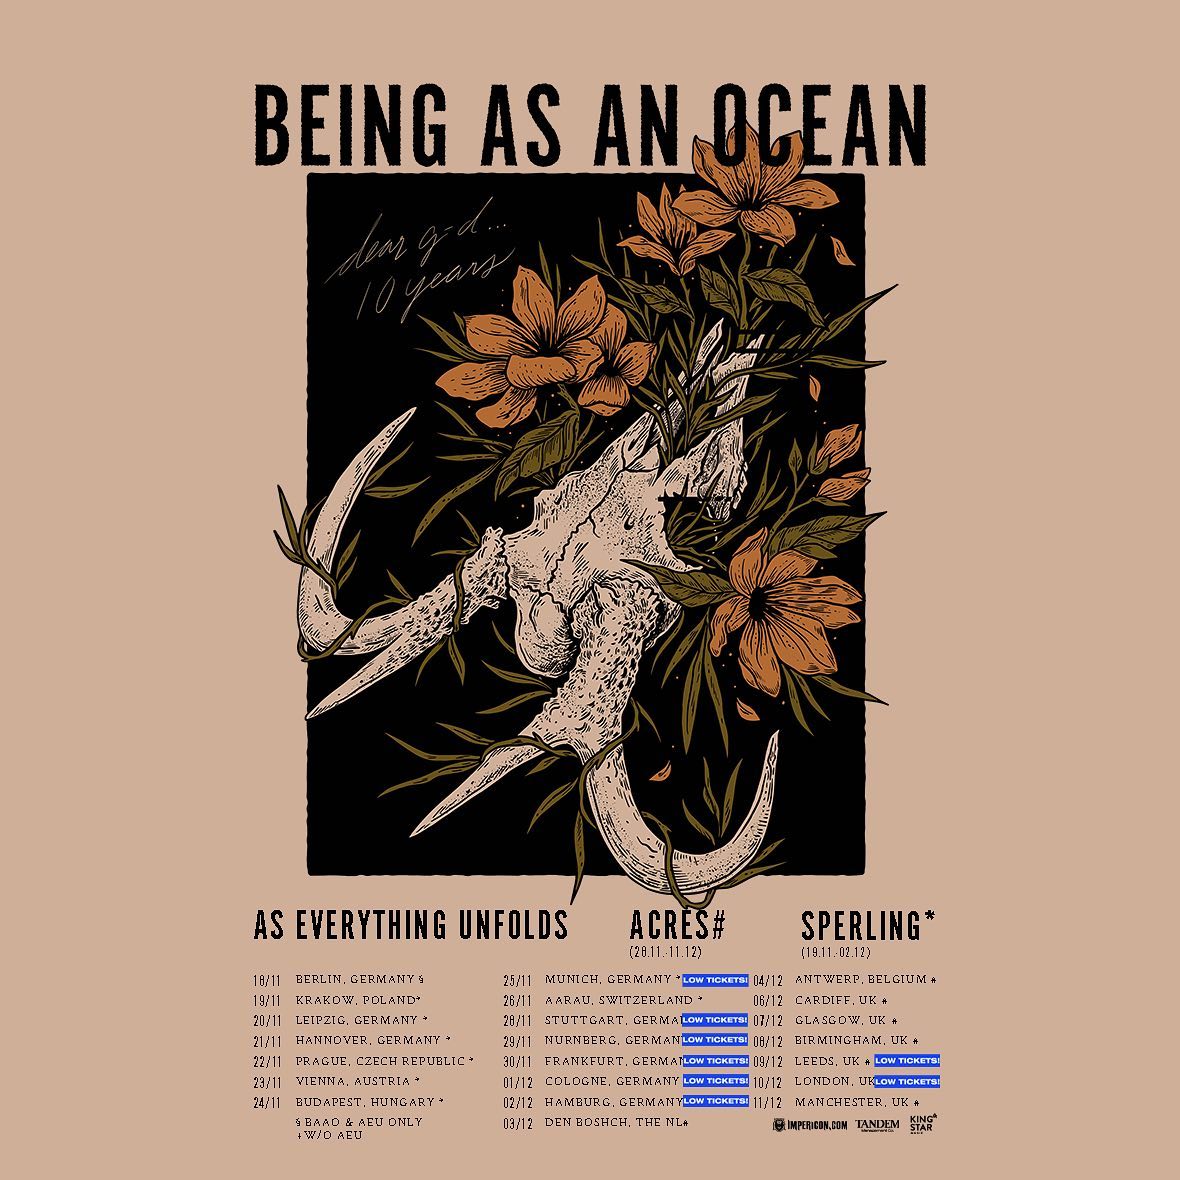 Tourplakat von Being as an Ocean